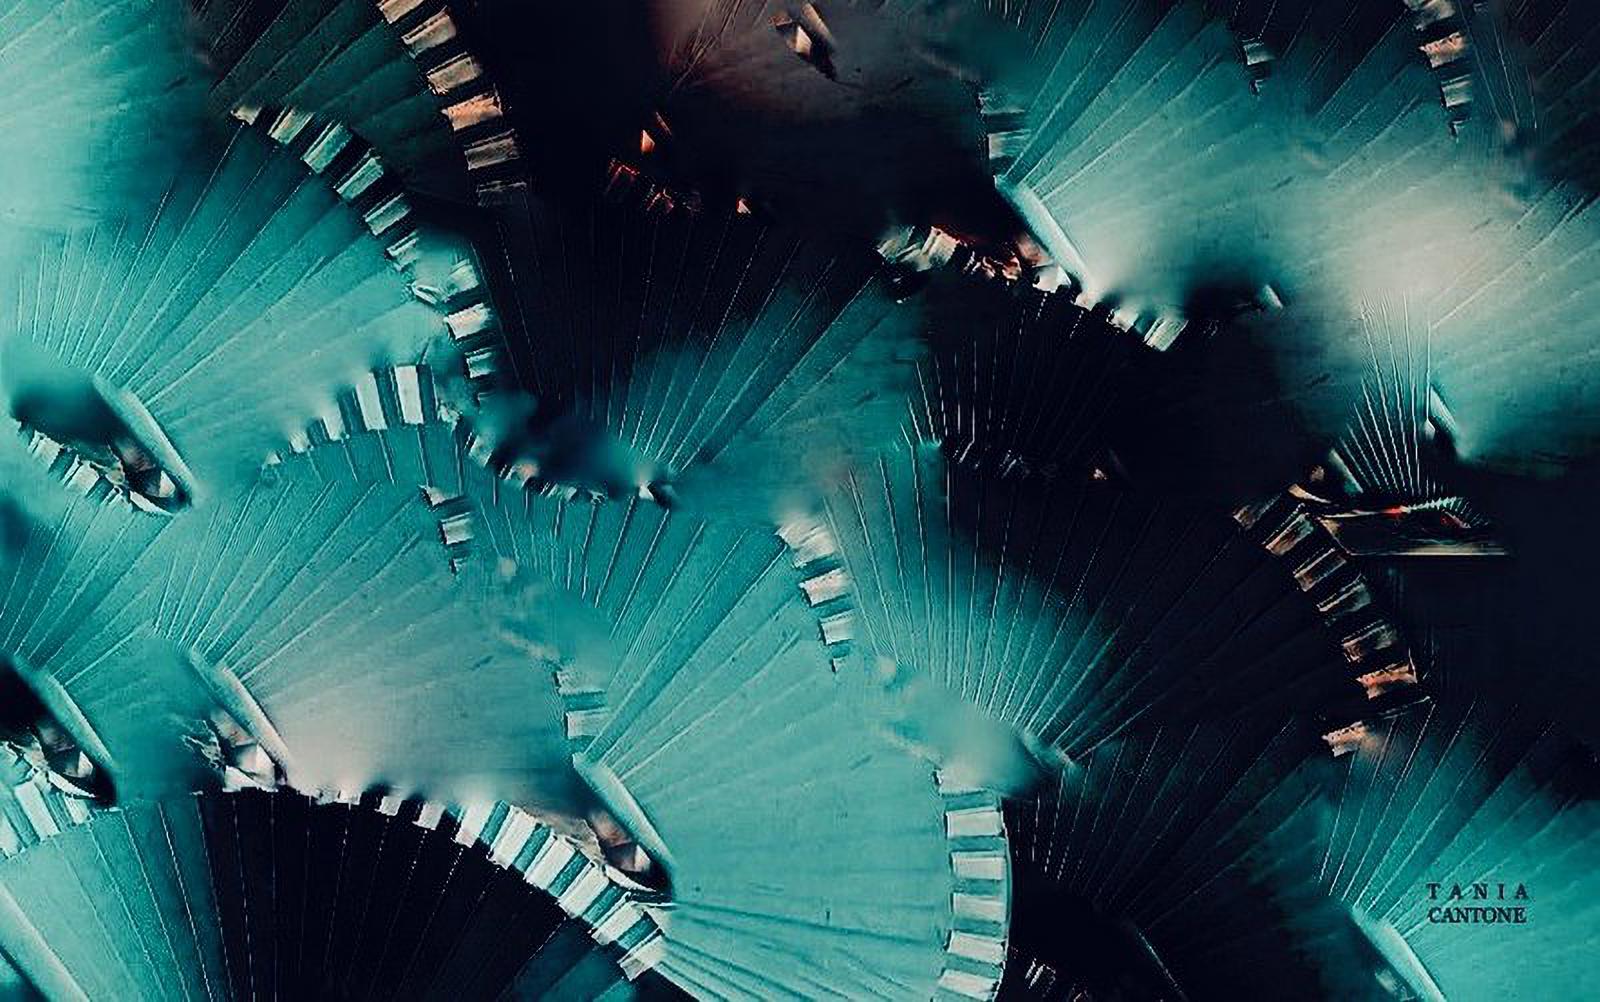 folding fan